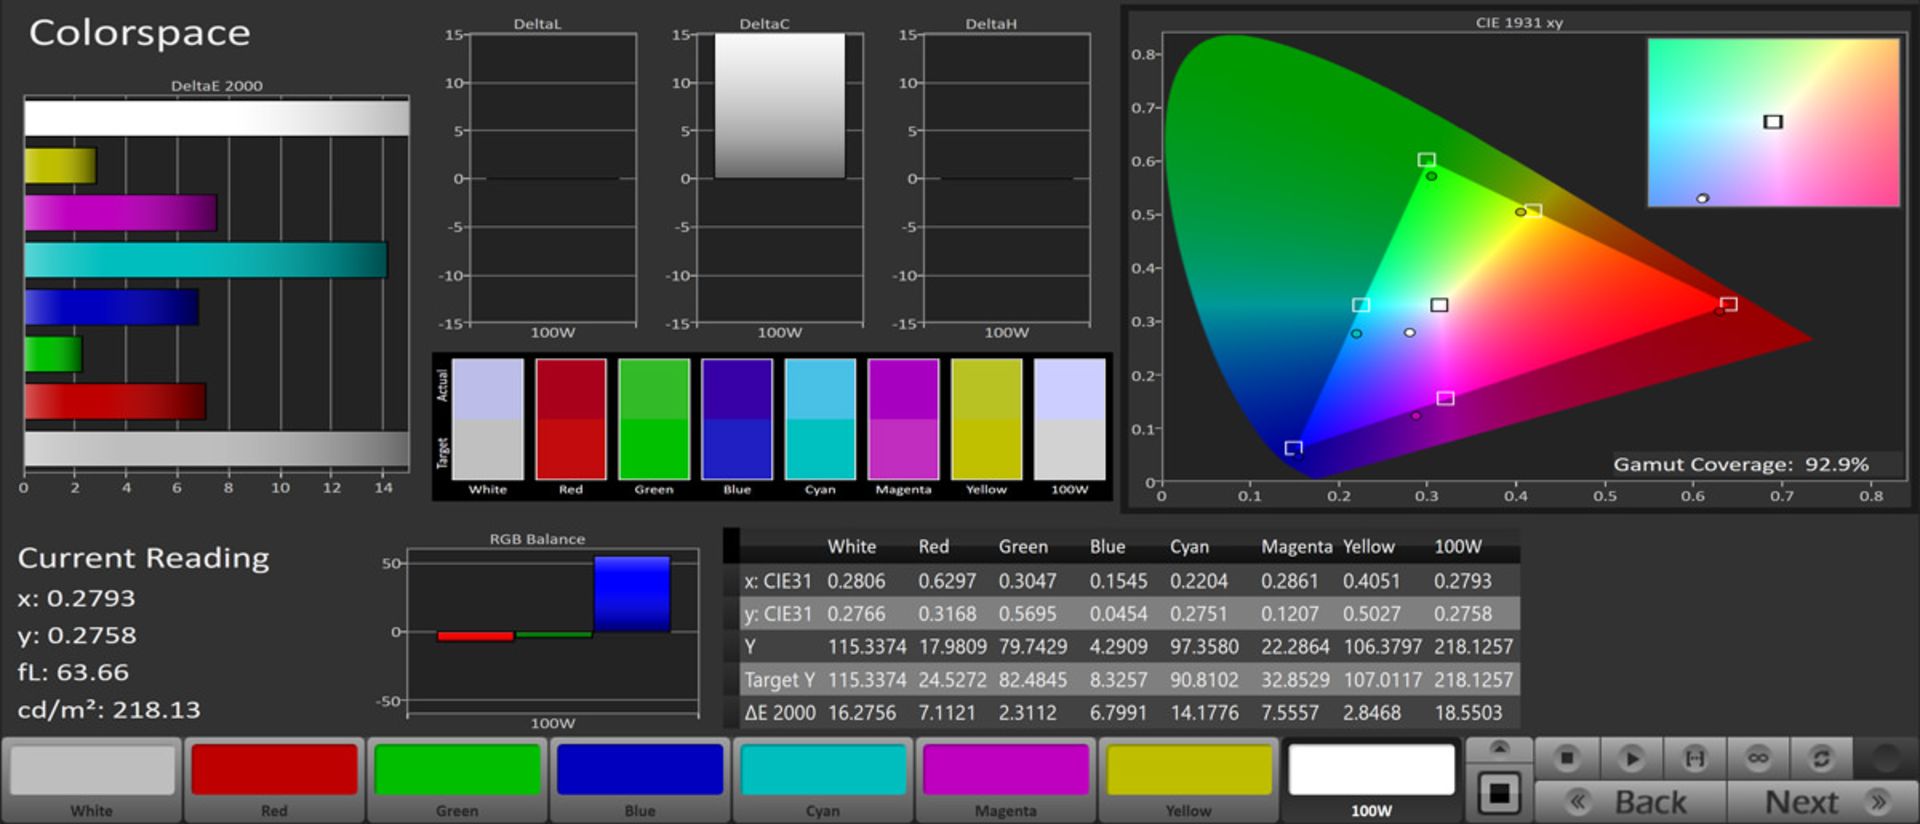 مرجع متخصصين ايران پوشش فضاي رنگي sRGB در حالت Game - تلويزيون Mi TV 4S 2019